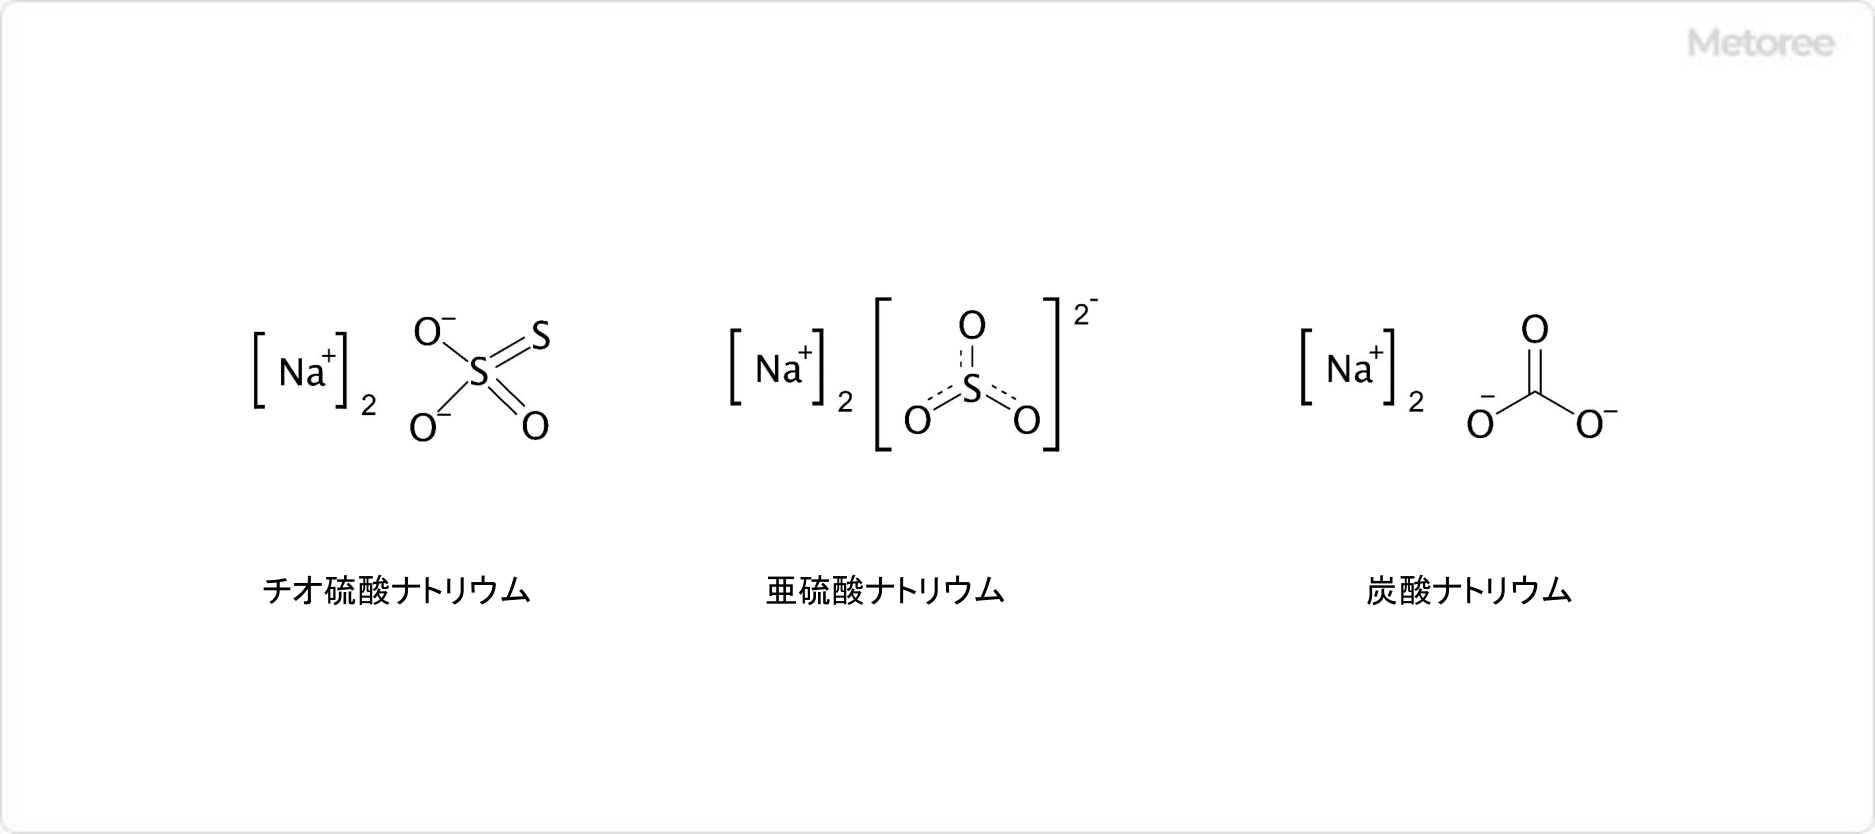 硫化水素ナトリウムと空気との反応による生成物